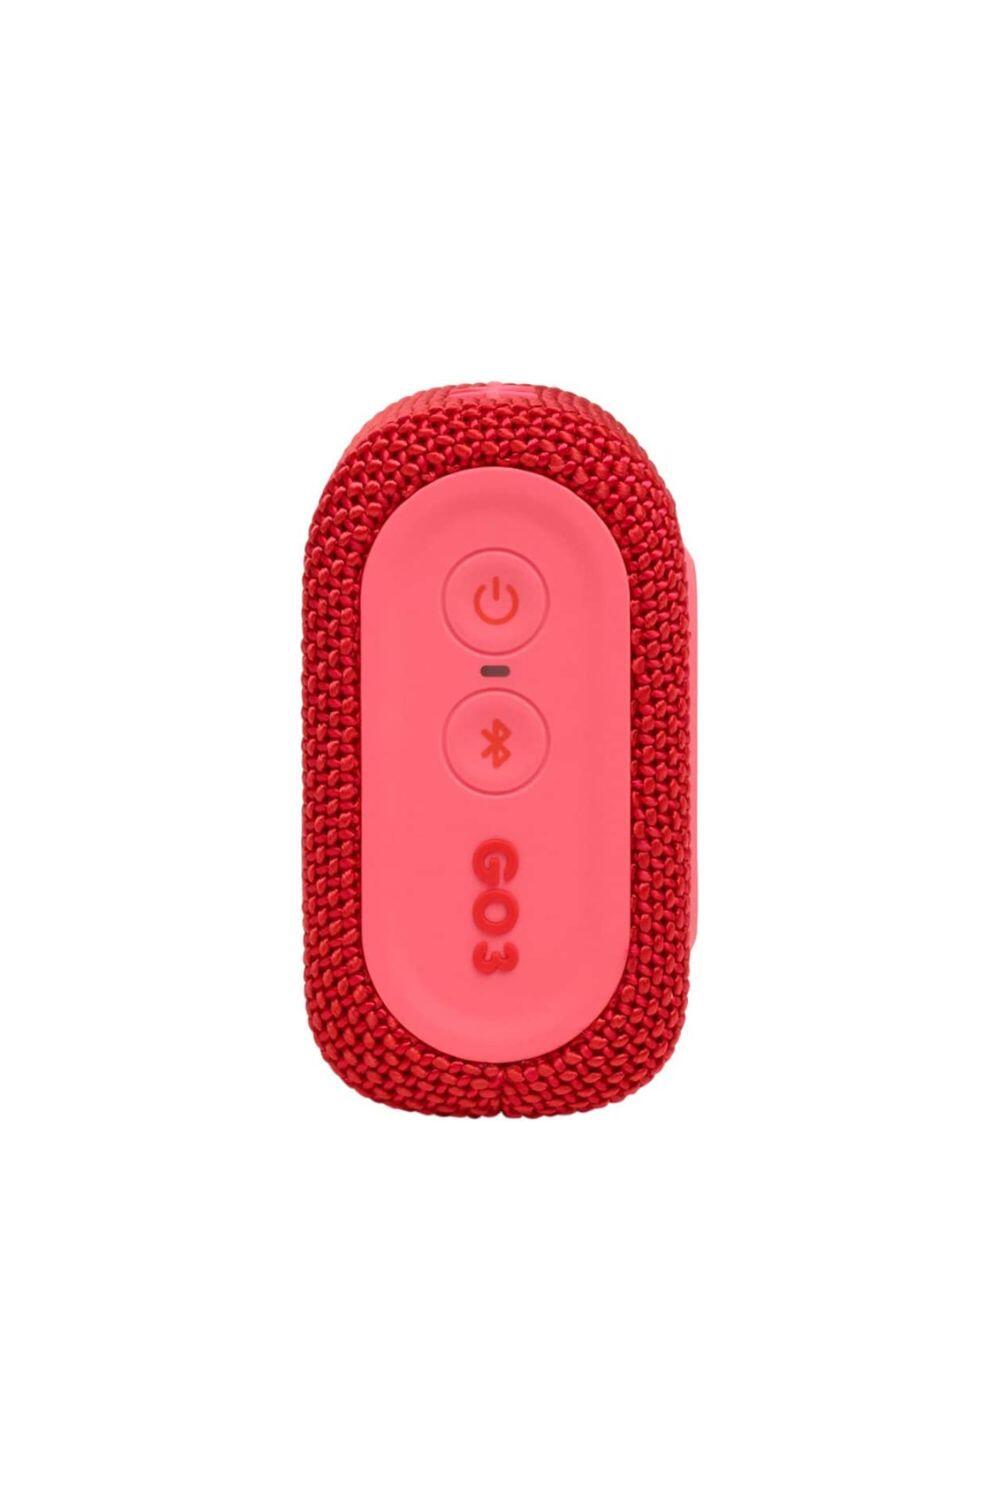 JBL GO 3 Waterproof/Dustproof Wireless Bluetooth Speaker 3/7